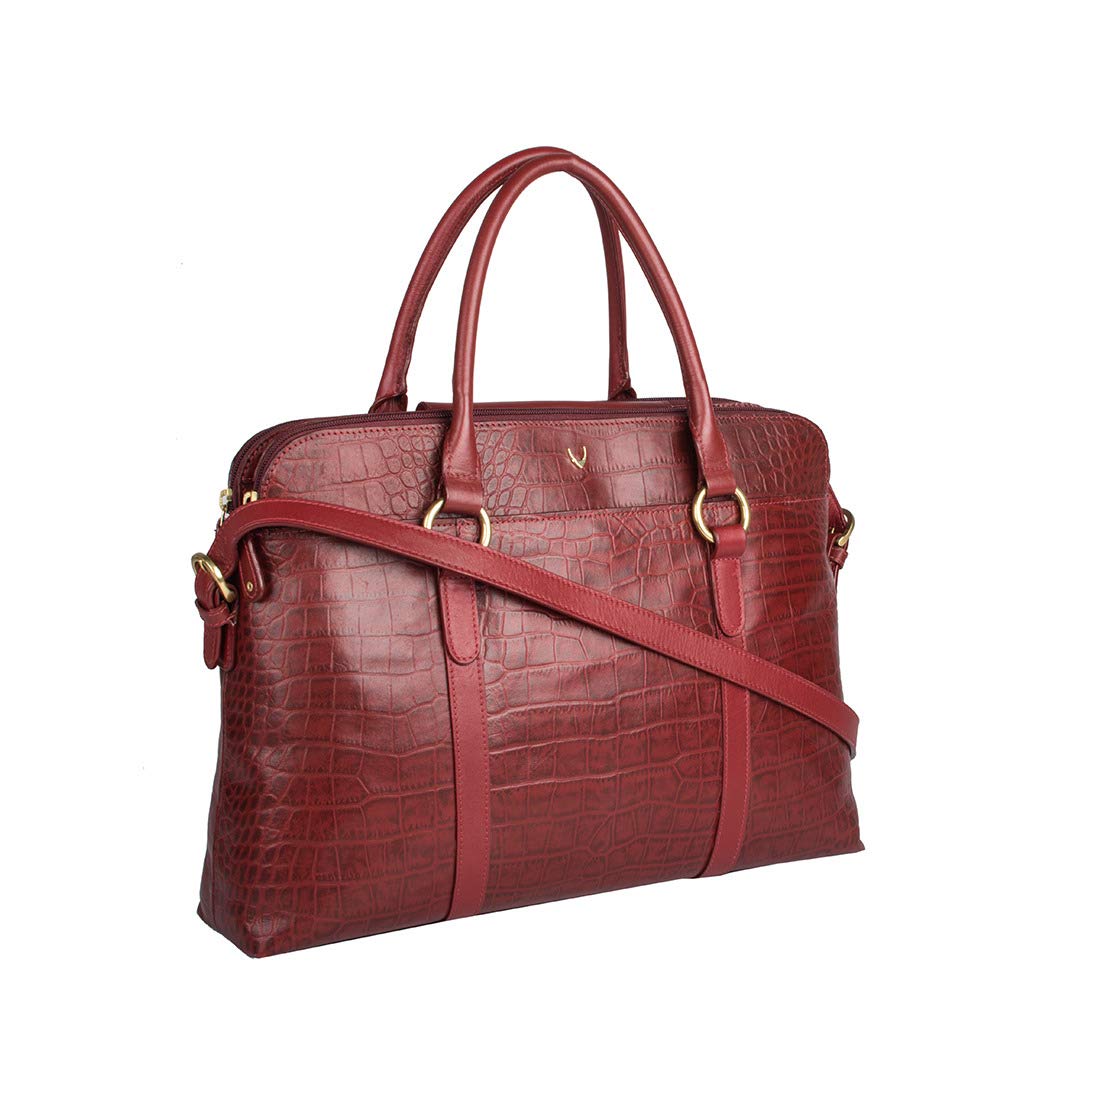 Hidesign Women's Shoulder Bag (Red)